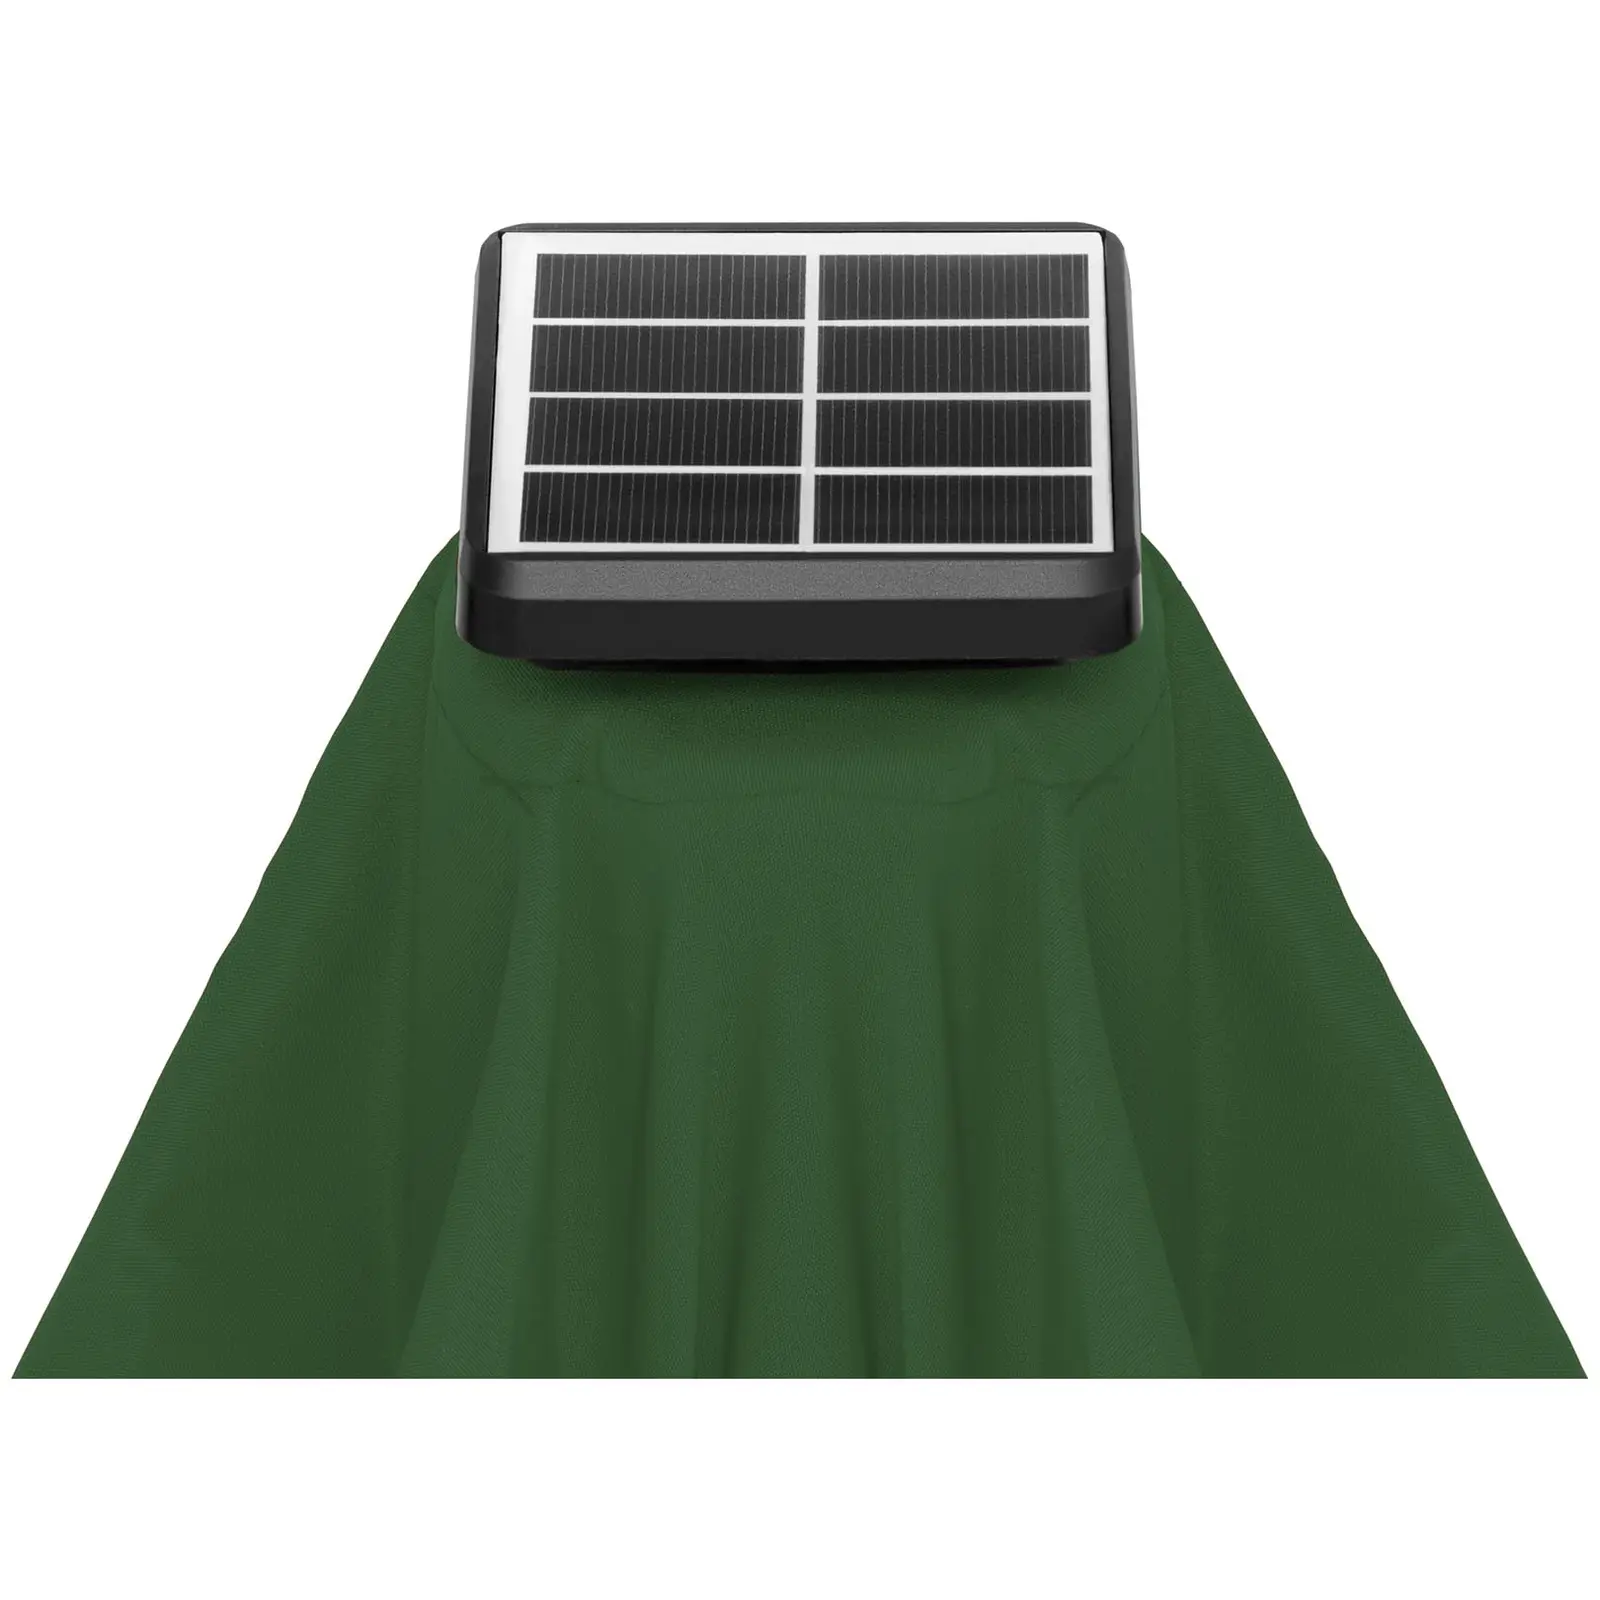 B-zboží Slunečník s LED osvětlením - zelený - kulatý - Ø 300 cm - s náklonem